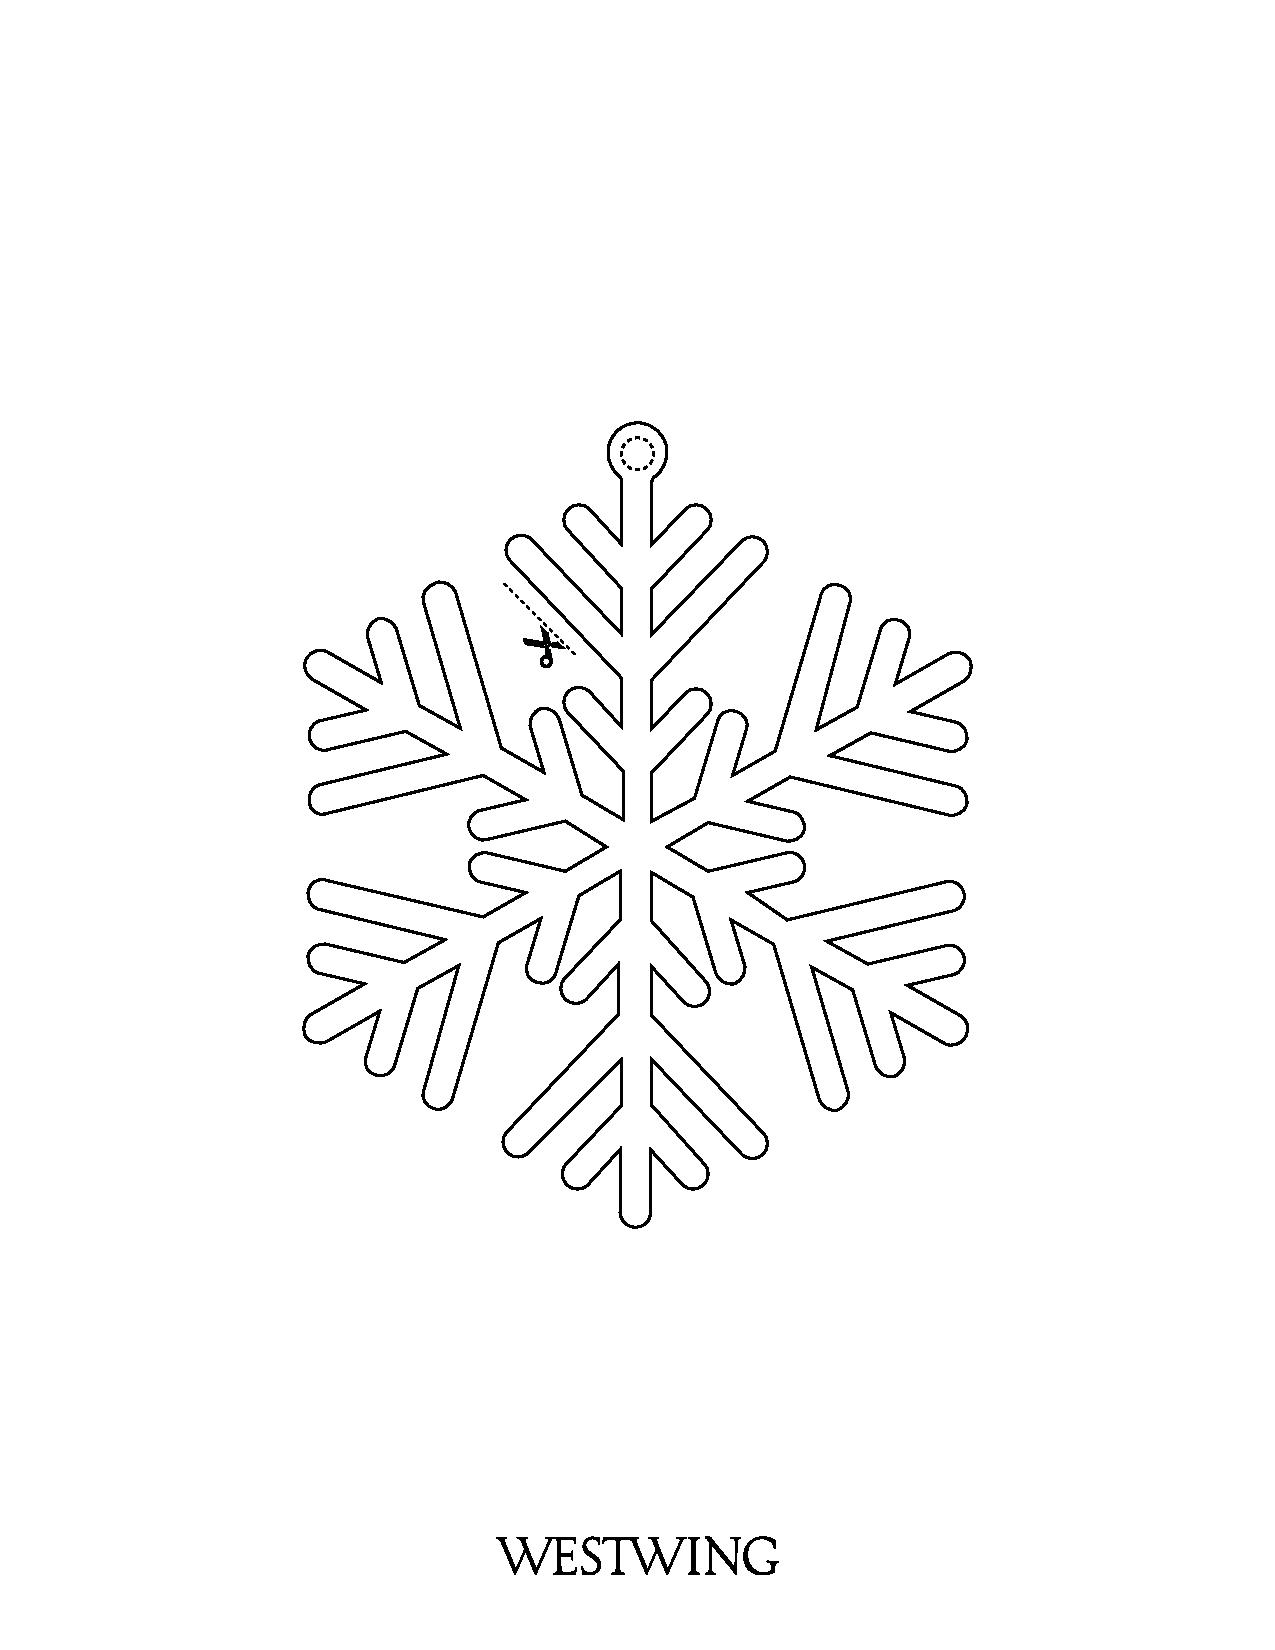 Copo de nieve para recortar - Navidad - Dibujos para colorear para niños